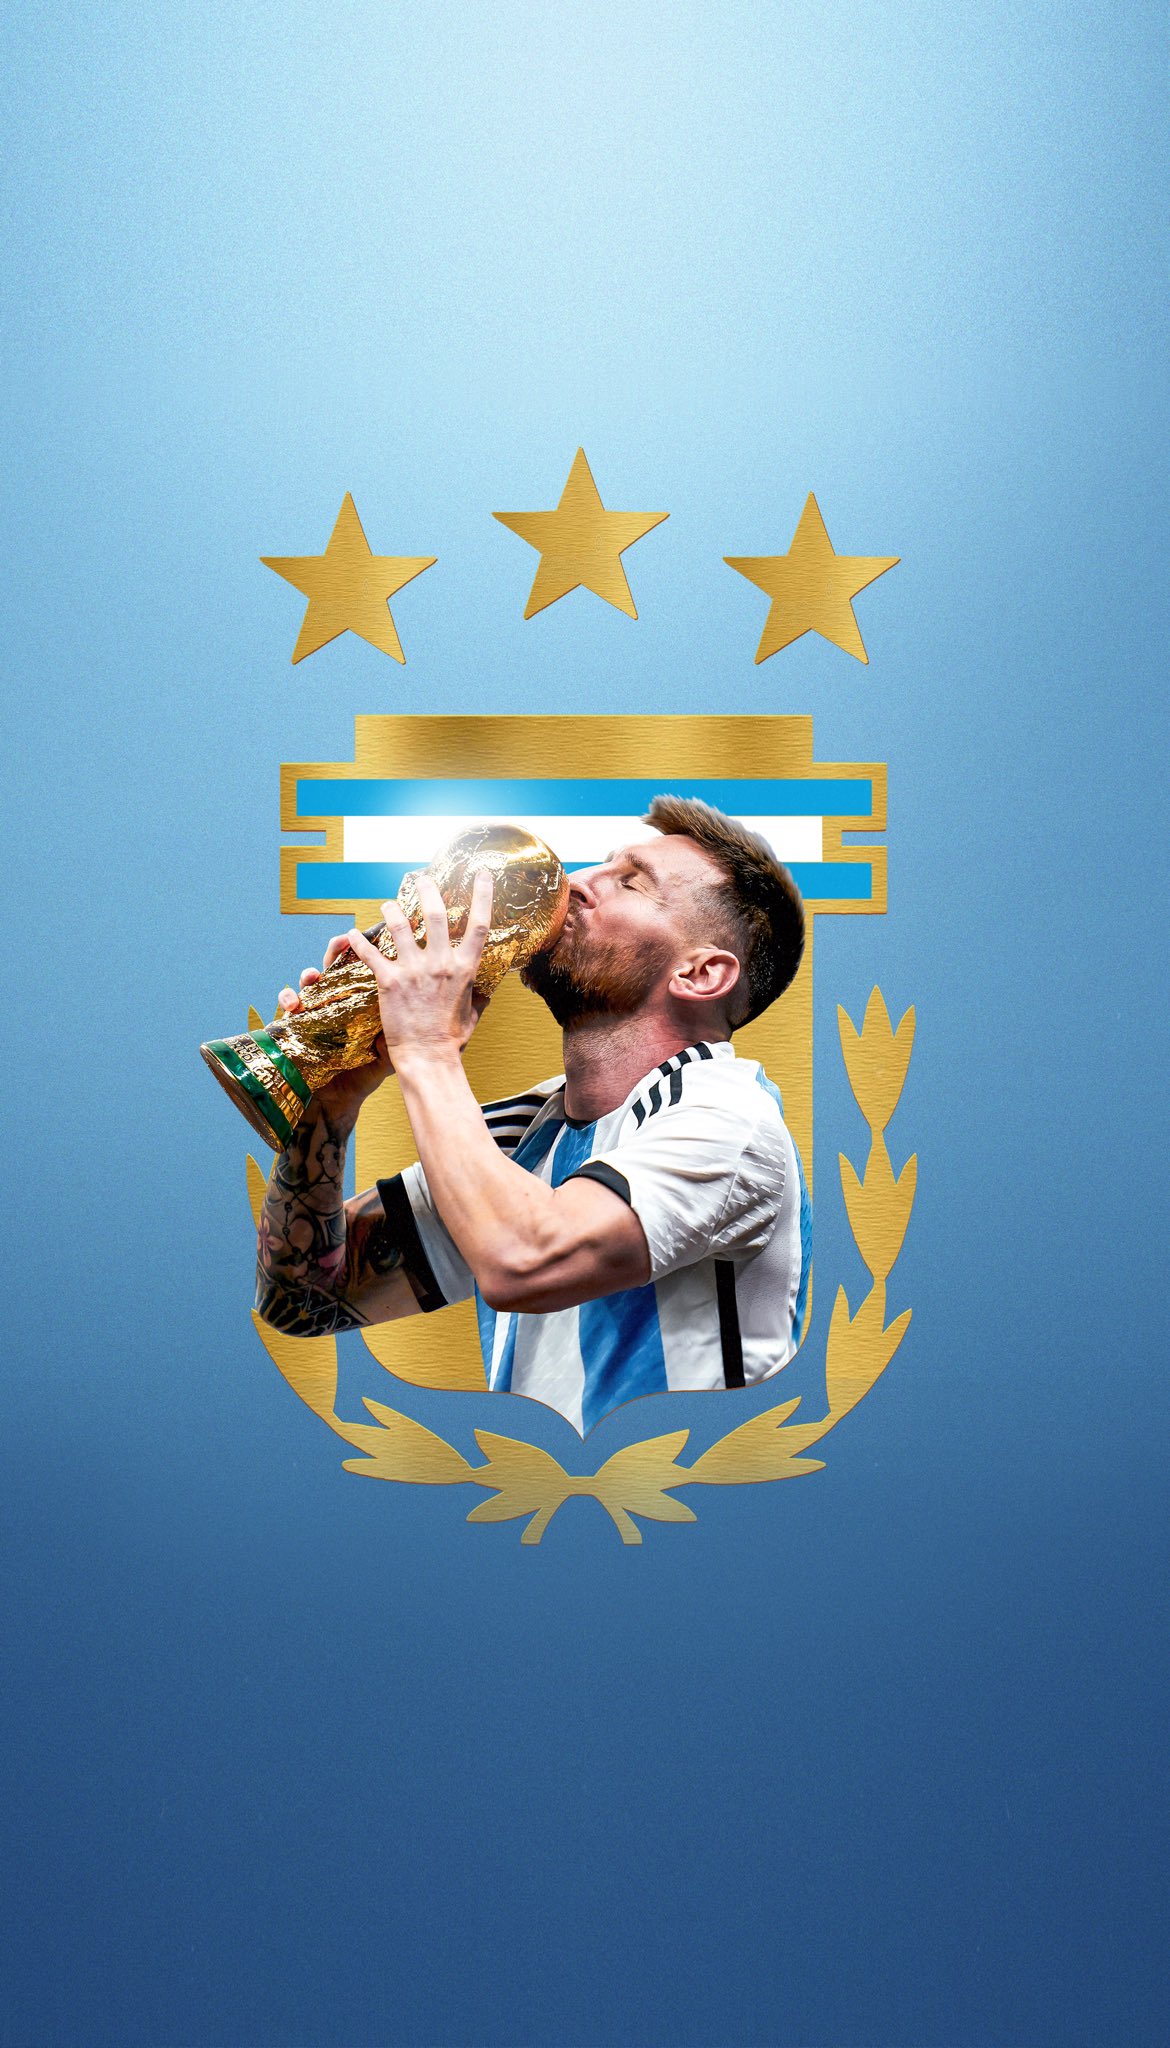 Nếu bạn yêu bóng đá, bạn không thể bỏ qua hình ảnh về ngôi sao nổi tiếng Lionel Messi! Với kỹ thuật điêu luyện và tài năng đỉnh cao, Messi đã khiến hàng triệu fan hâm mộ trên khắp thế giới phát sốt. Hãy đến và xem những khoảnh khắc đáng chú ý nhất của anh ta trong các trận đấu hấp dẫn.